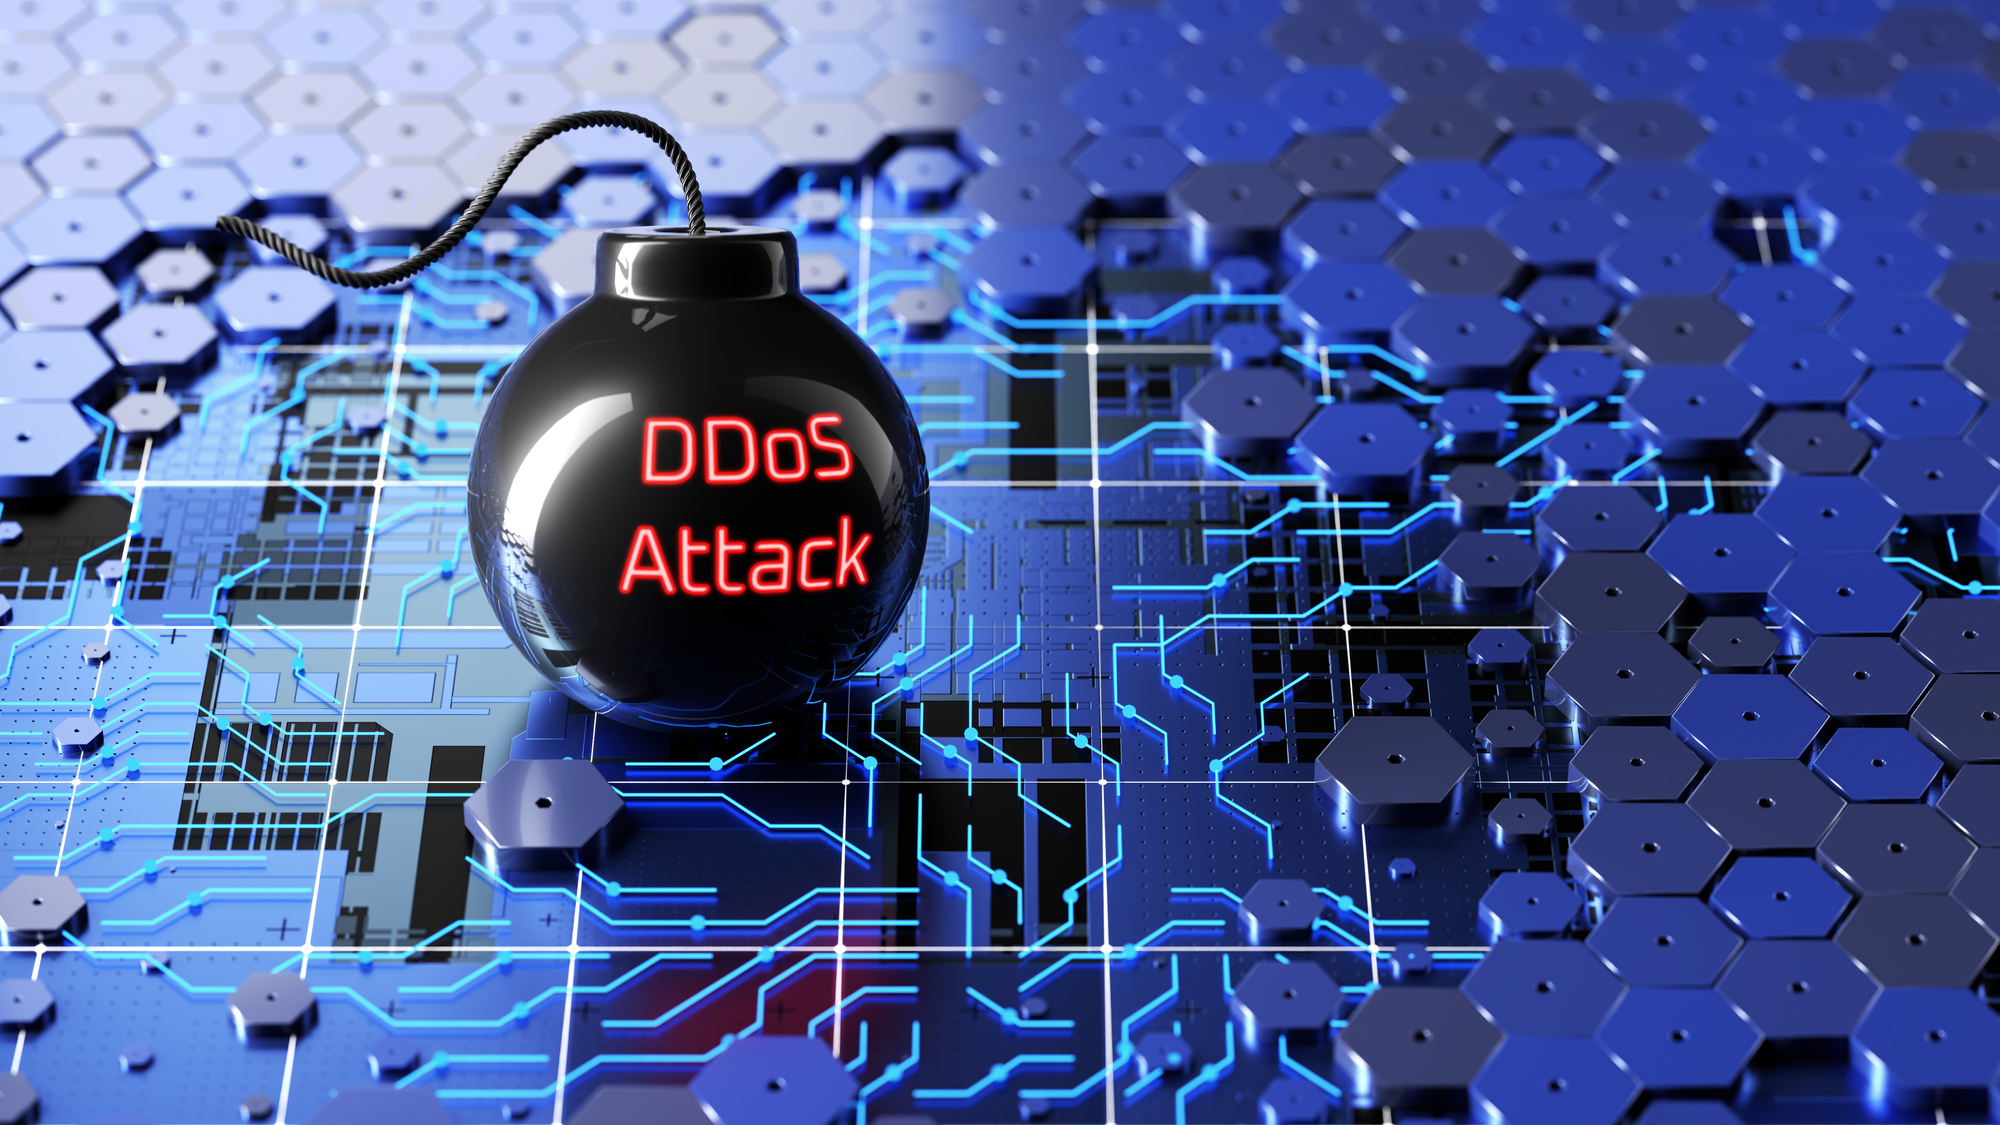 Dieser DDoS-Angriff kann eine Bombe sein. (Symbolbild)